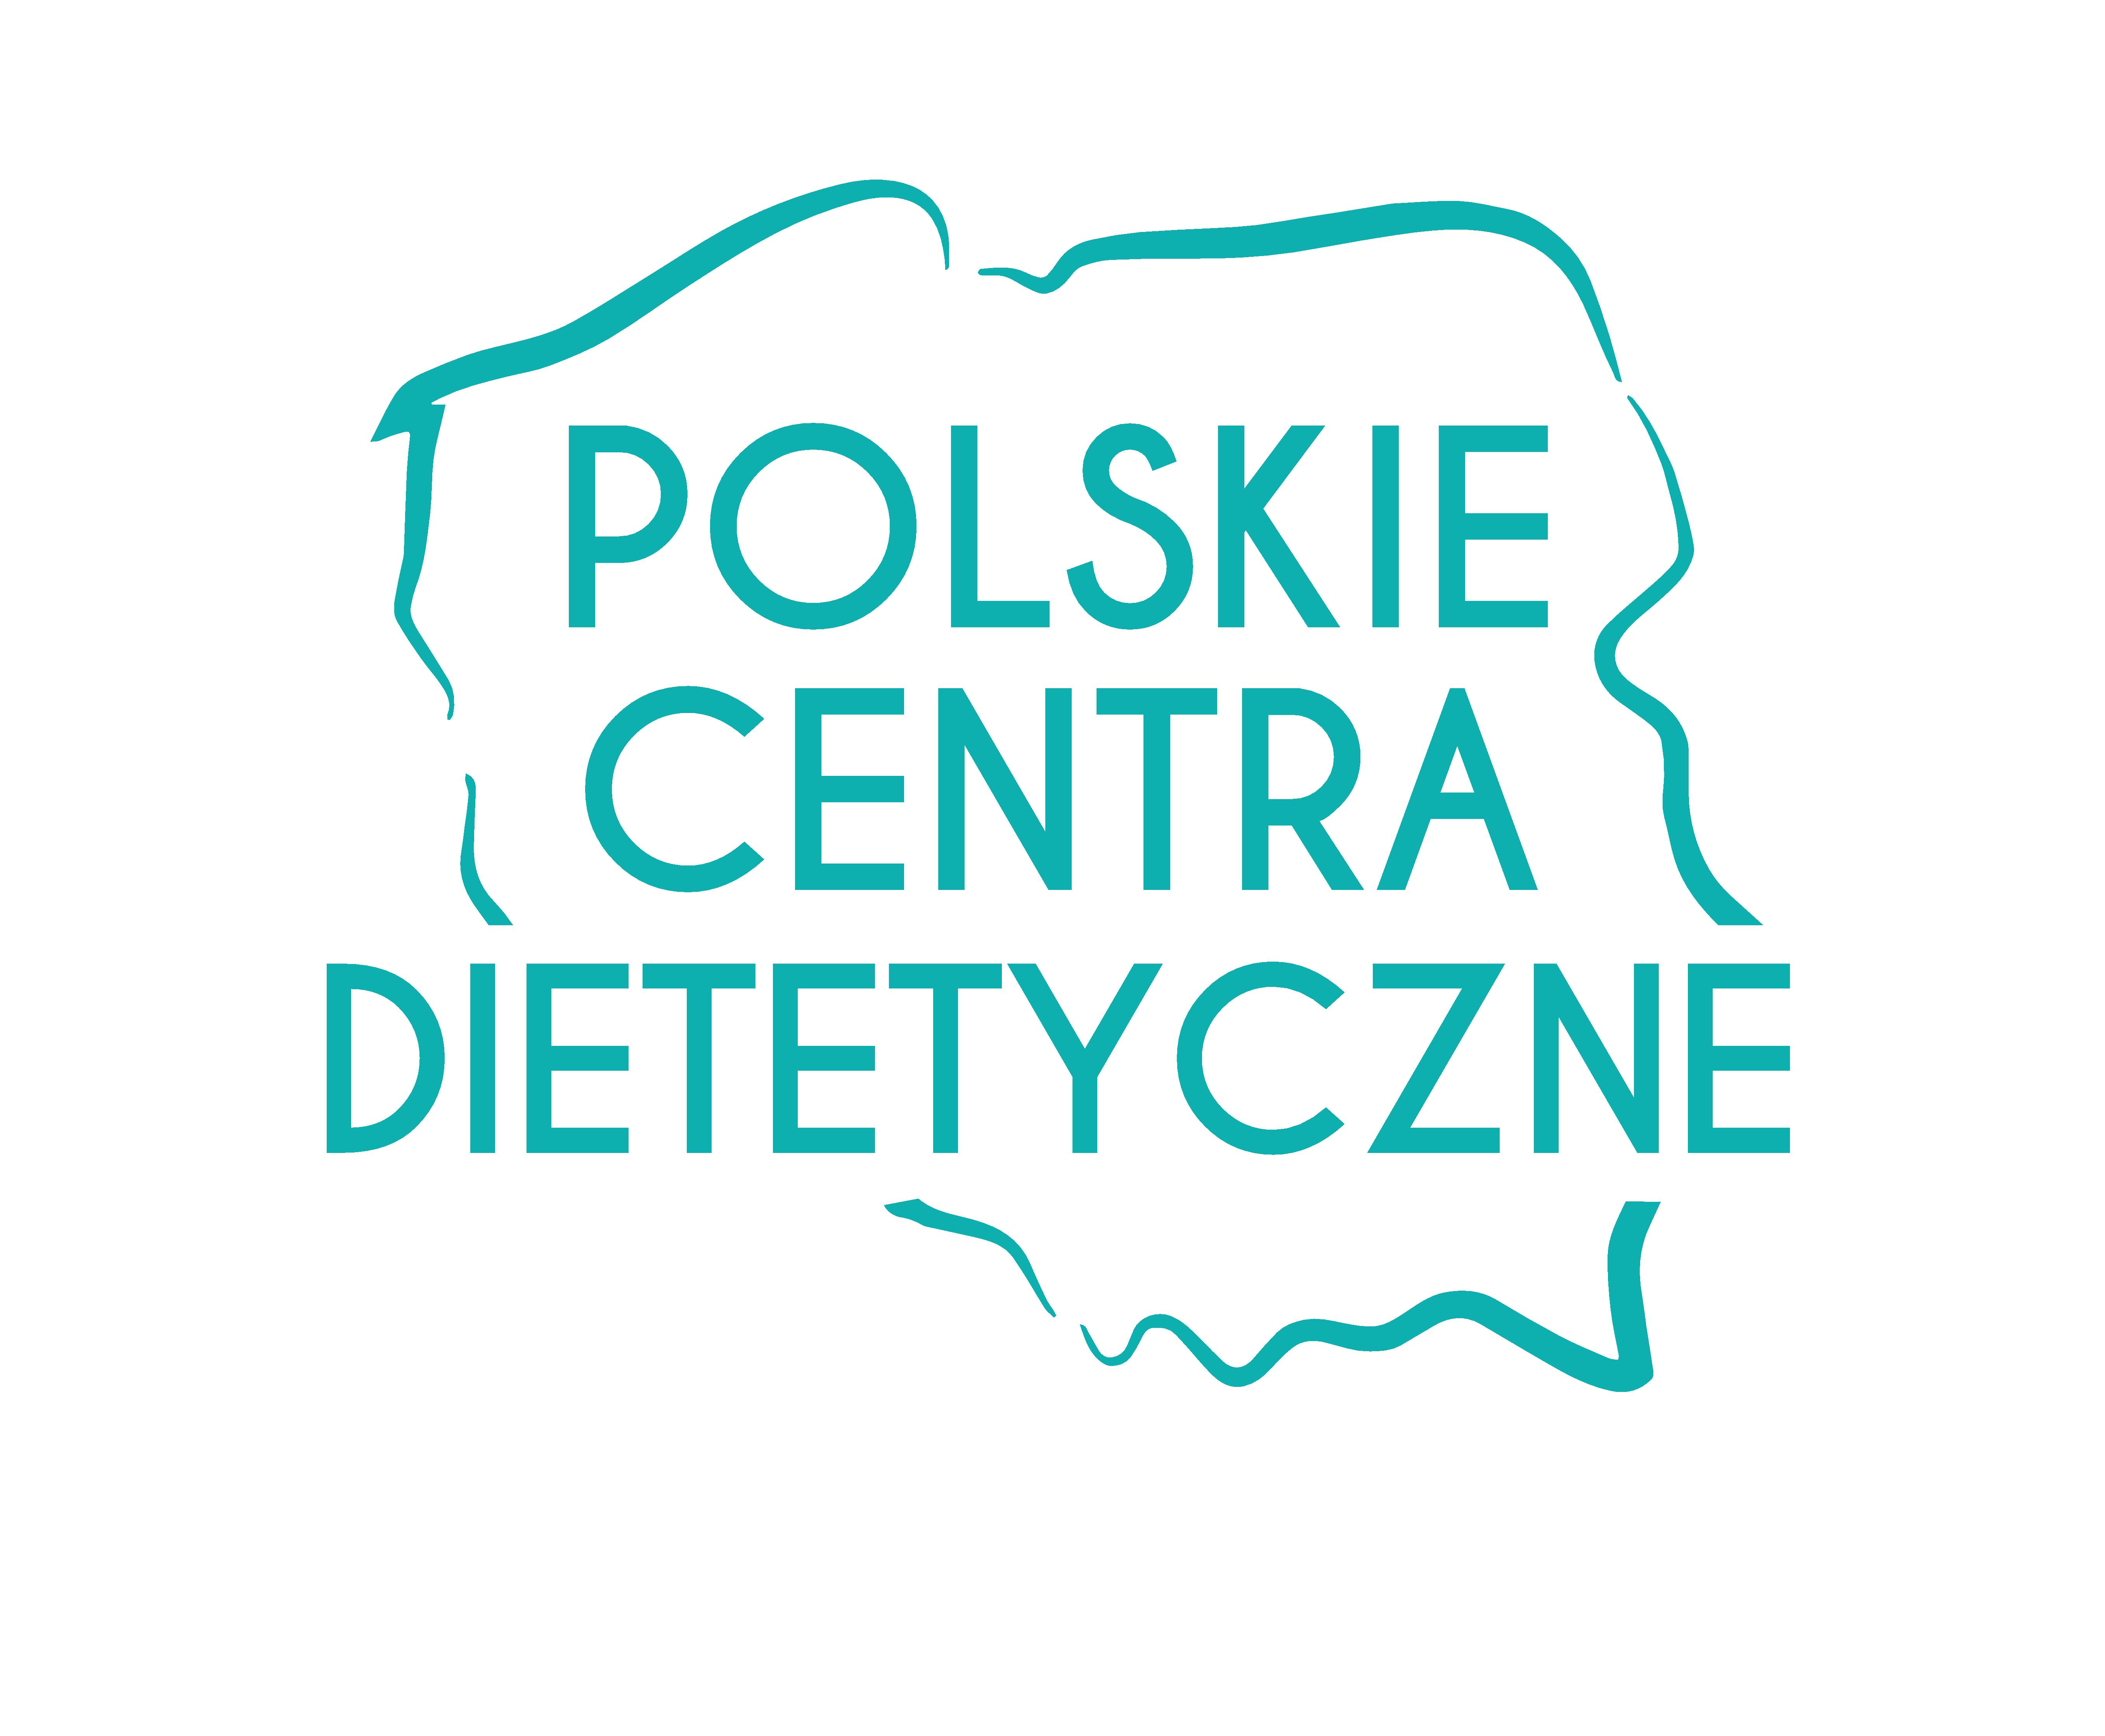 Darmowe konsultacje dietetyczne w gabinetach Projekt Zdrowie w Lublinie